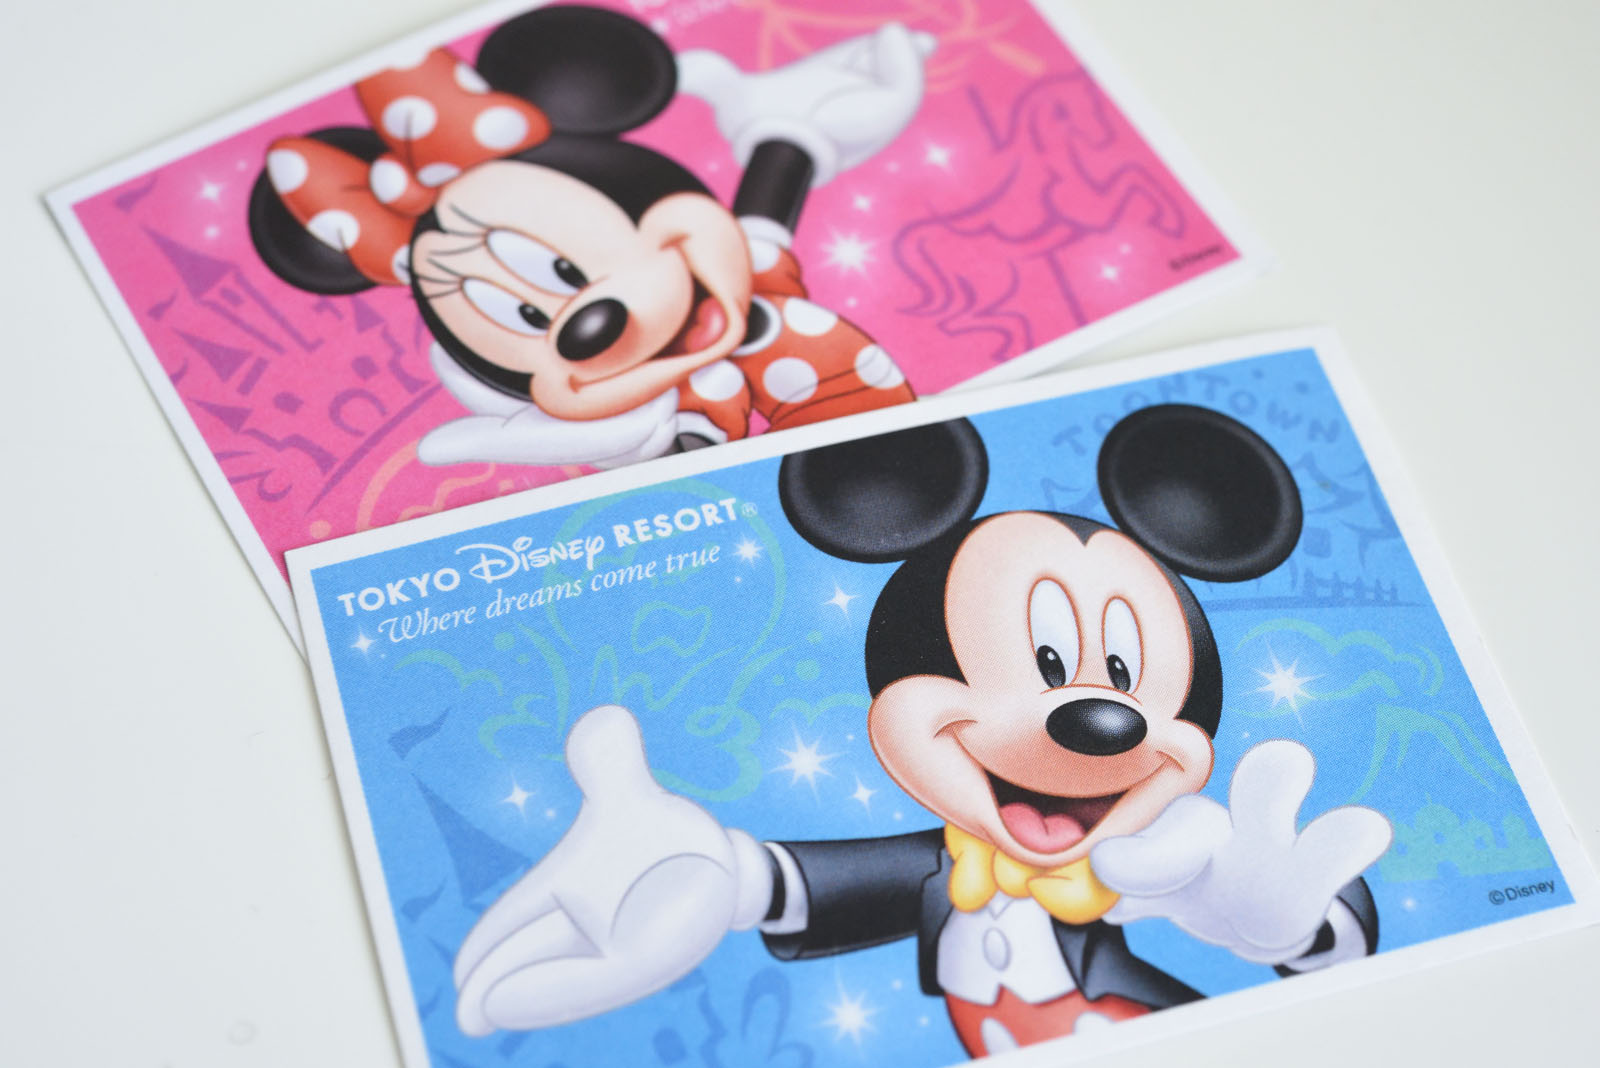 ディズニー値上げ 大人1デーパスポートが00円 年パスが約10万円 Tdl Tds 年4月1日からパークチケットを値上げ Disney Colors Blog